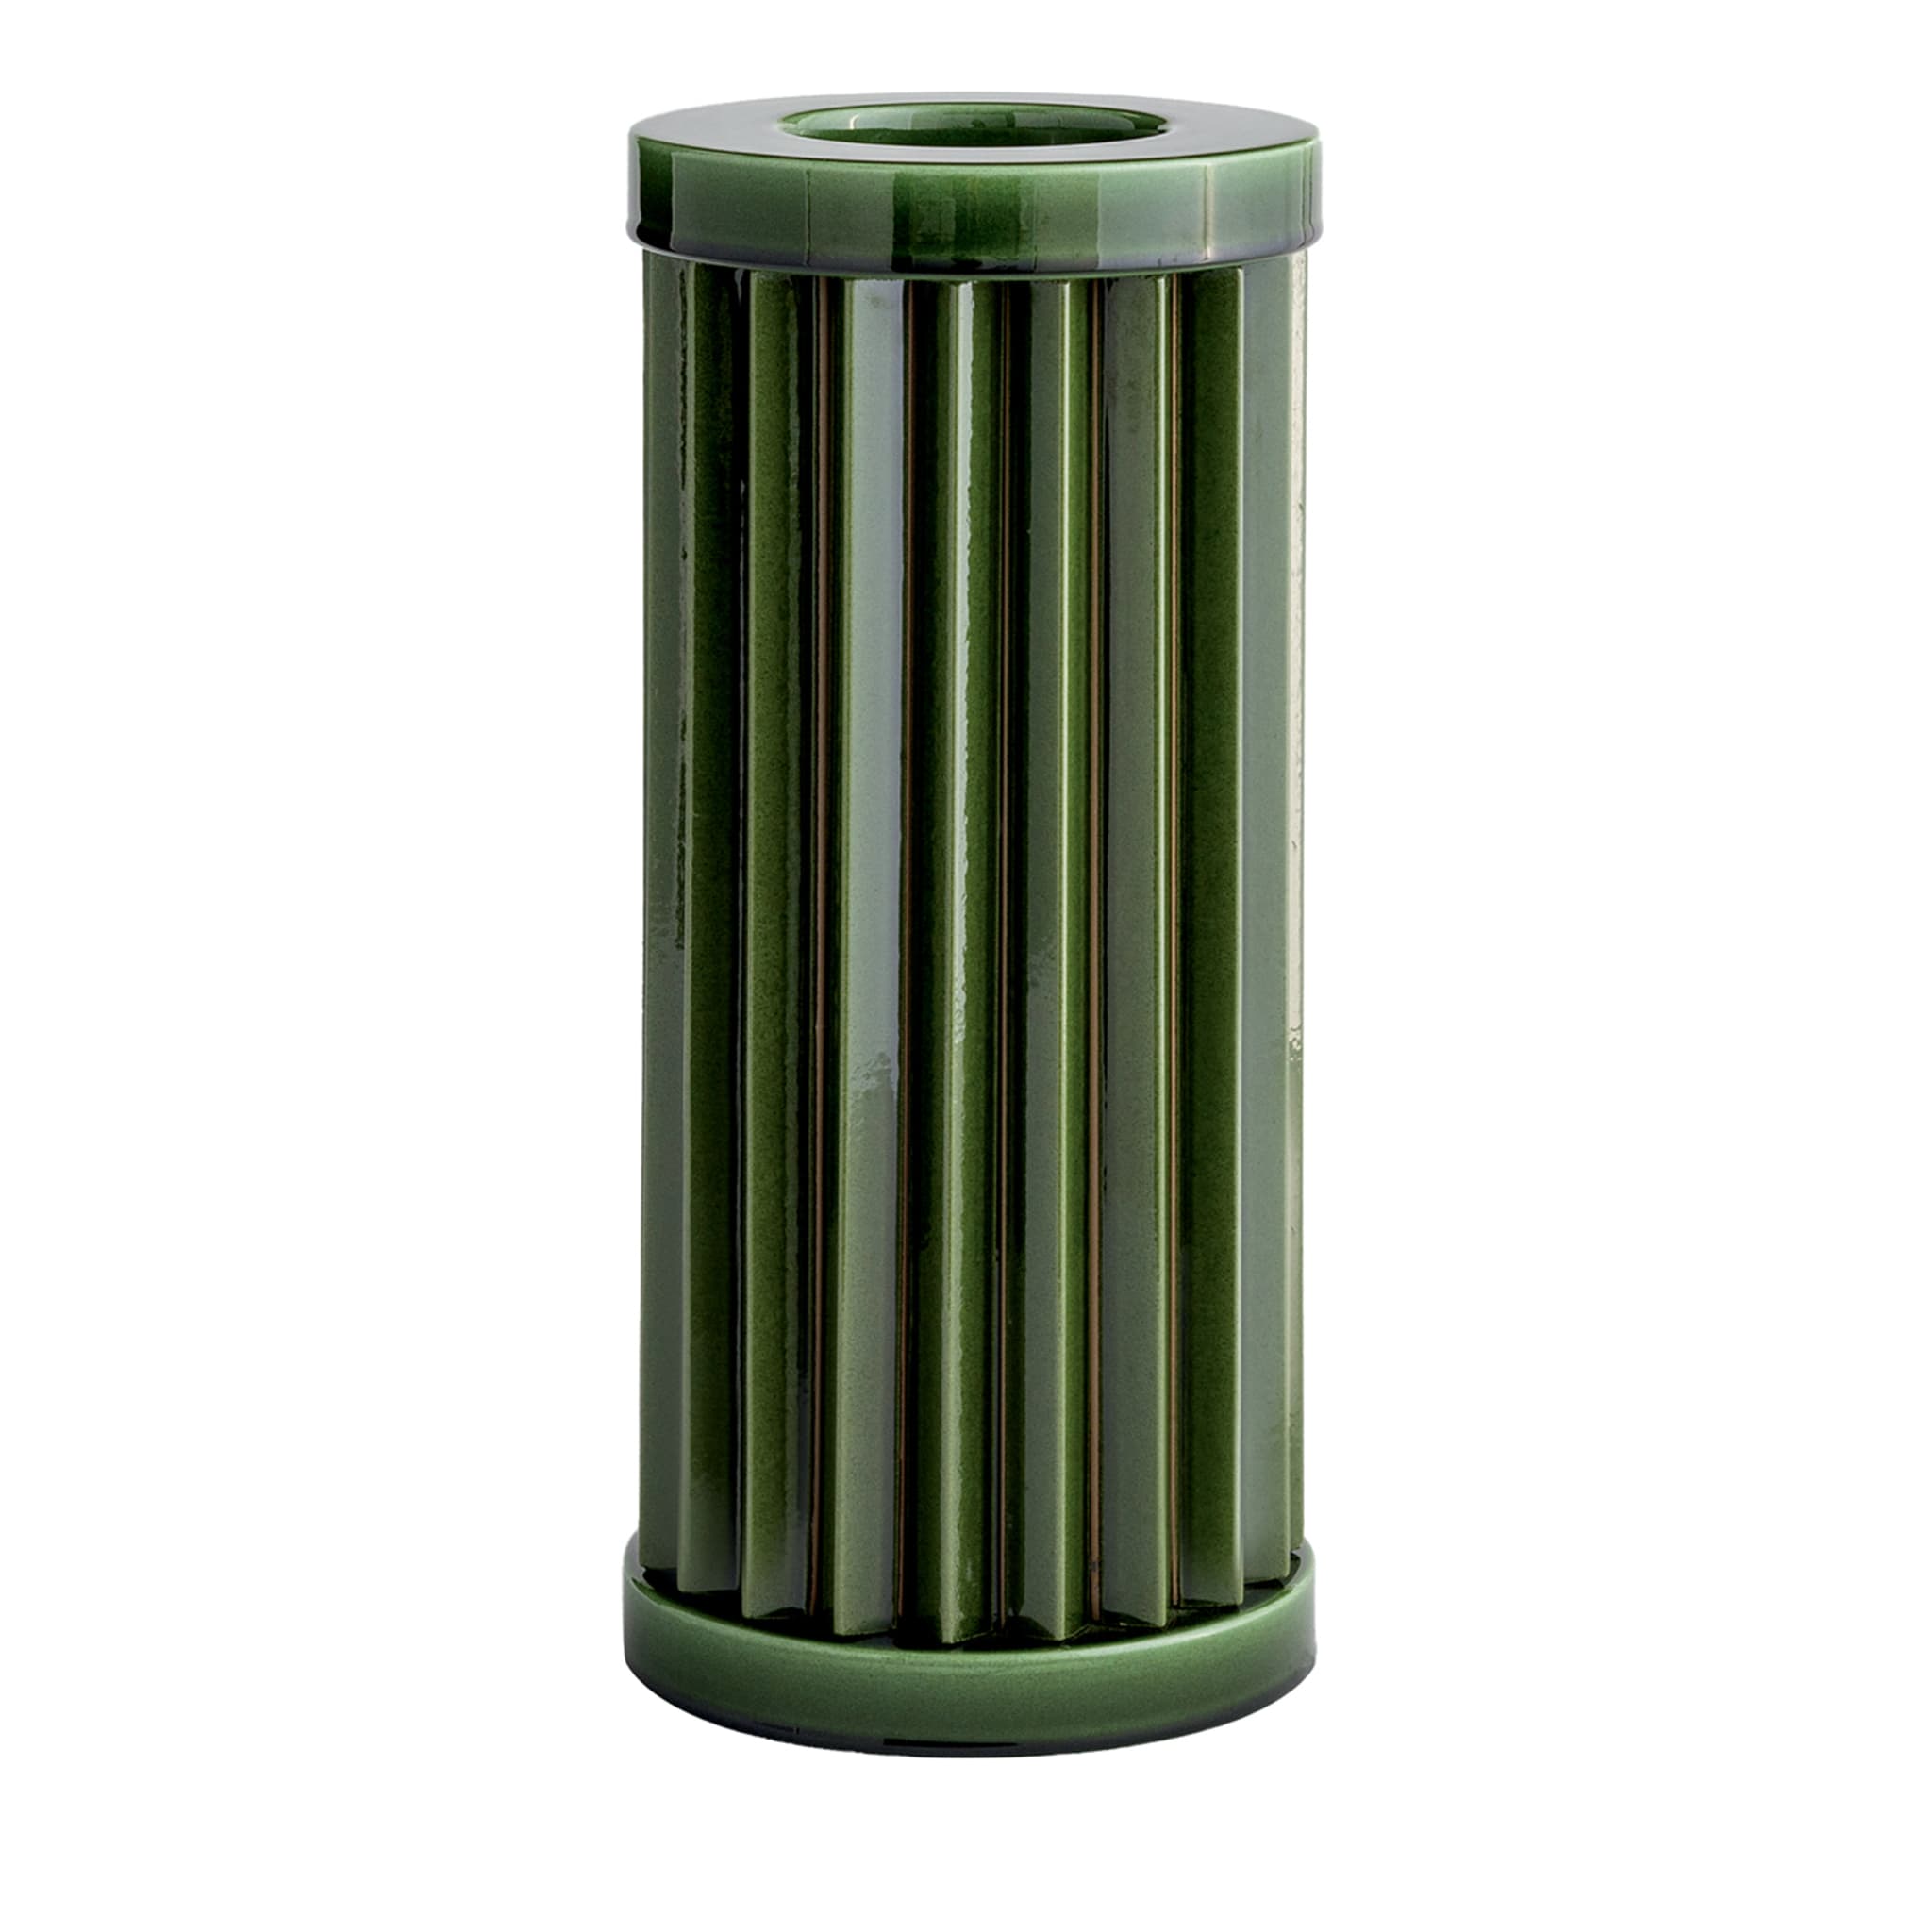 Rombini A Green Vase by Ronan & Erwan Bouroullec - Main view